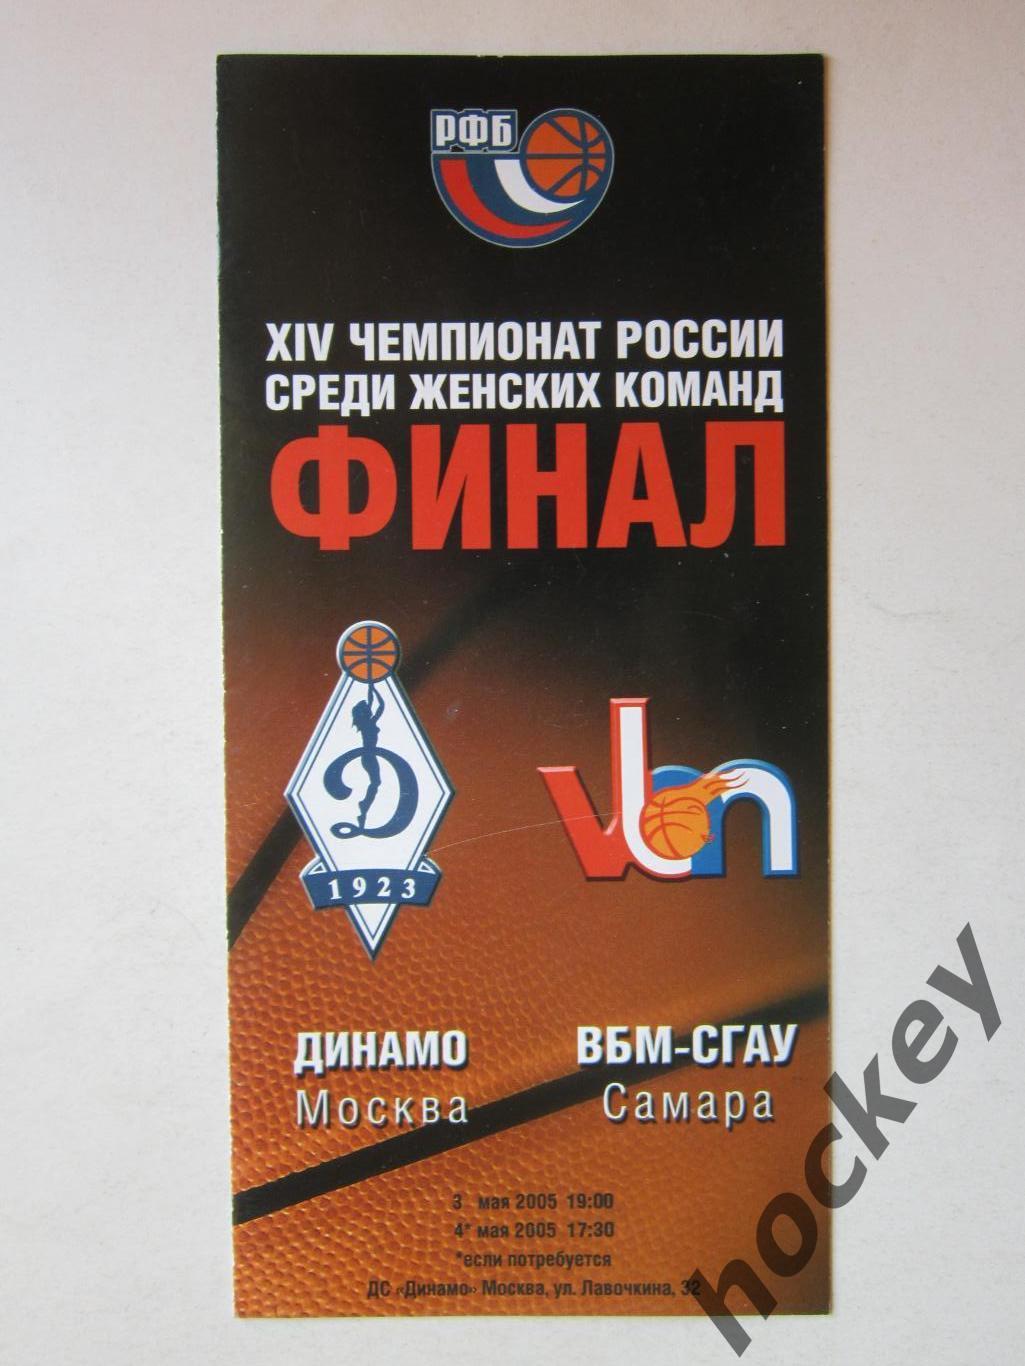 Динамо Москва - ВБМ-СГАУ Самара 3,4.05.2005. Финал.